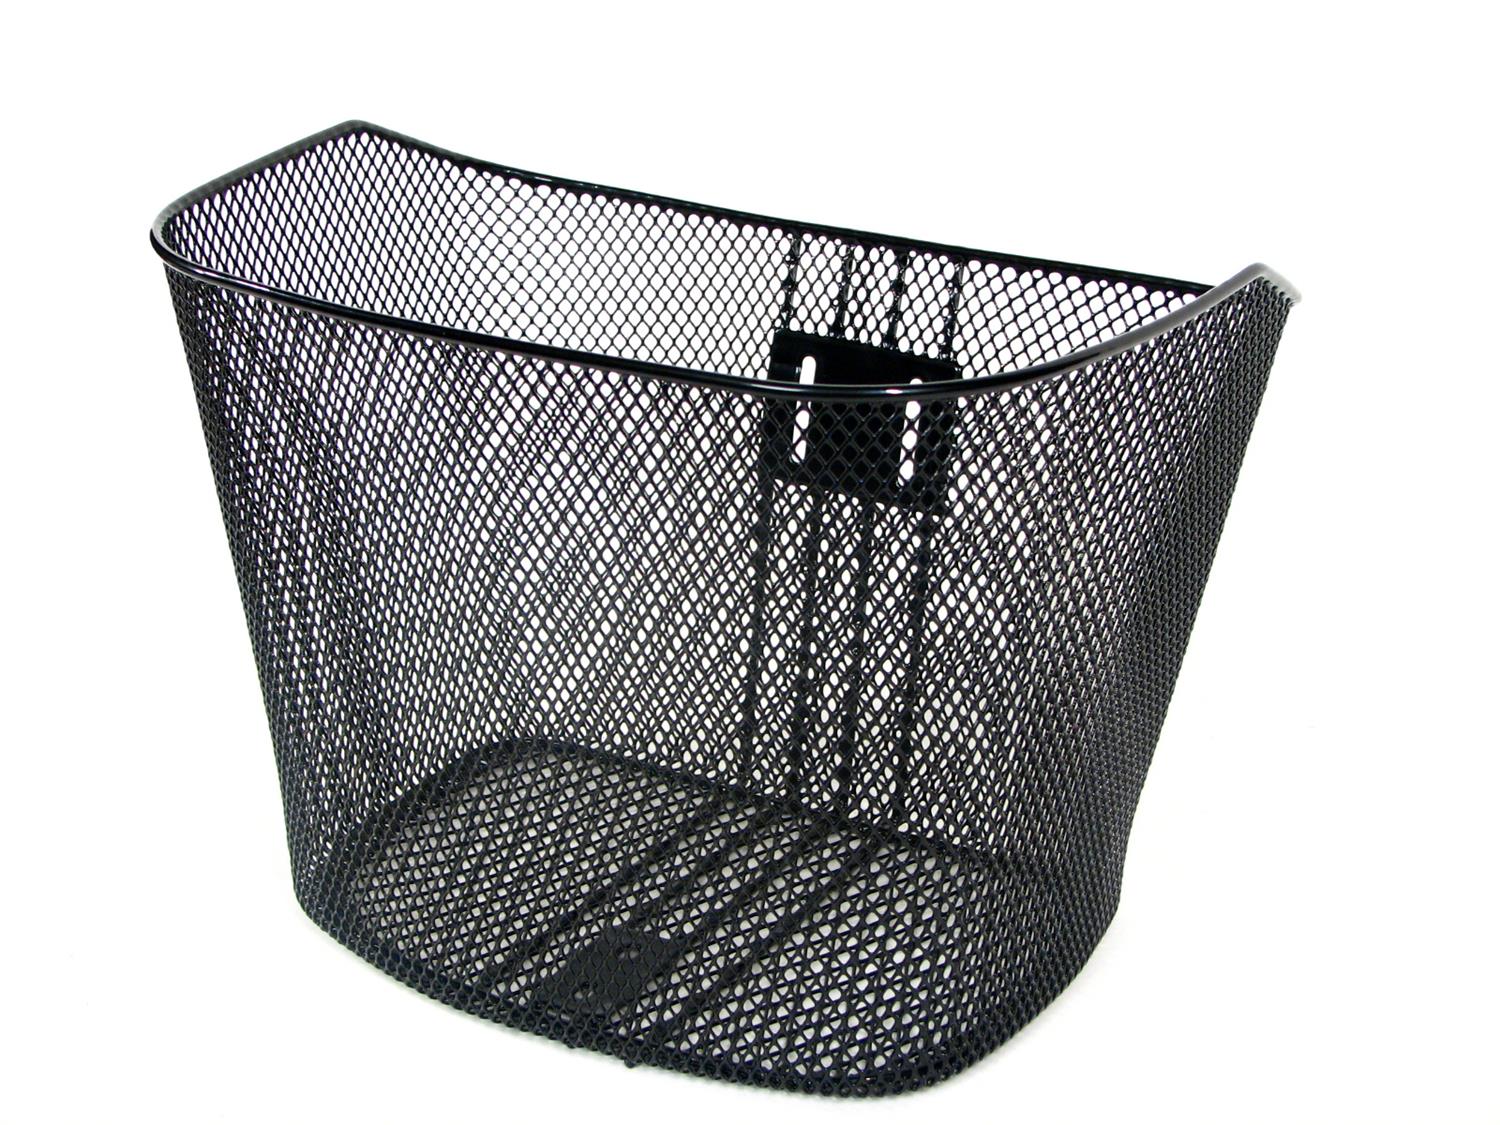 Ontrack Black wire mesh Basket